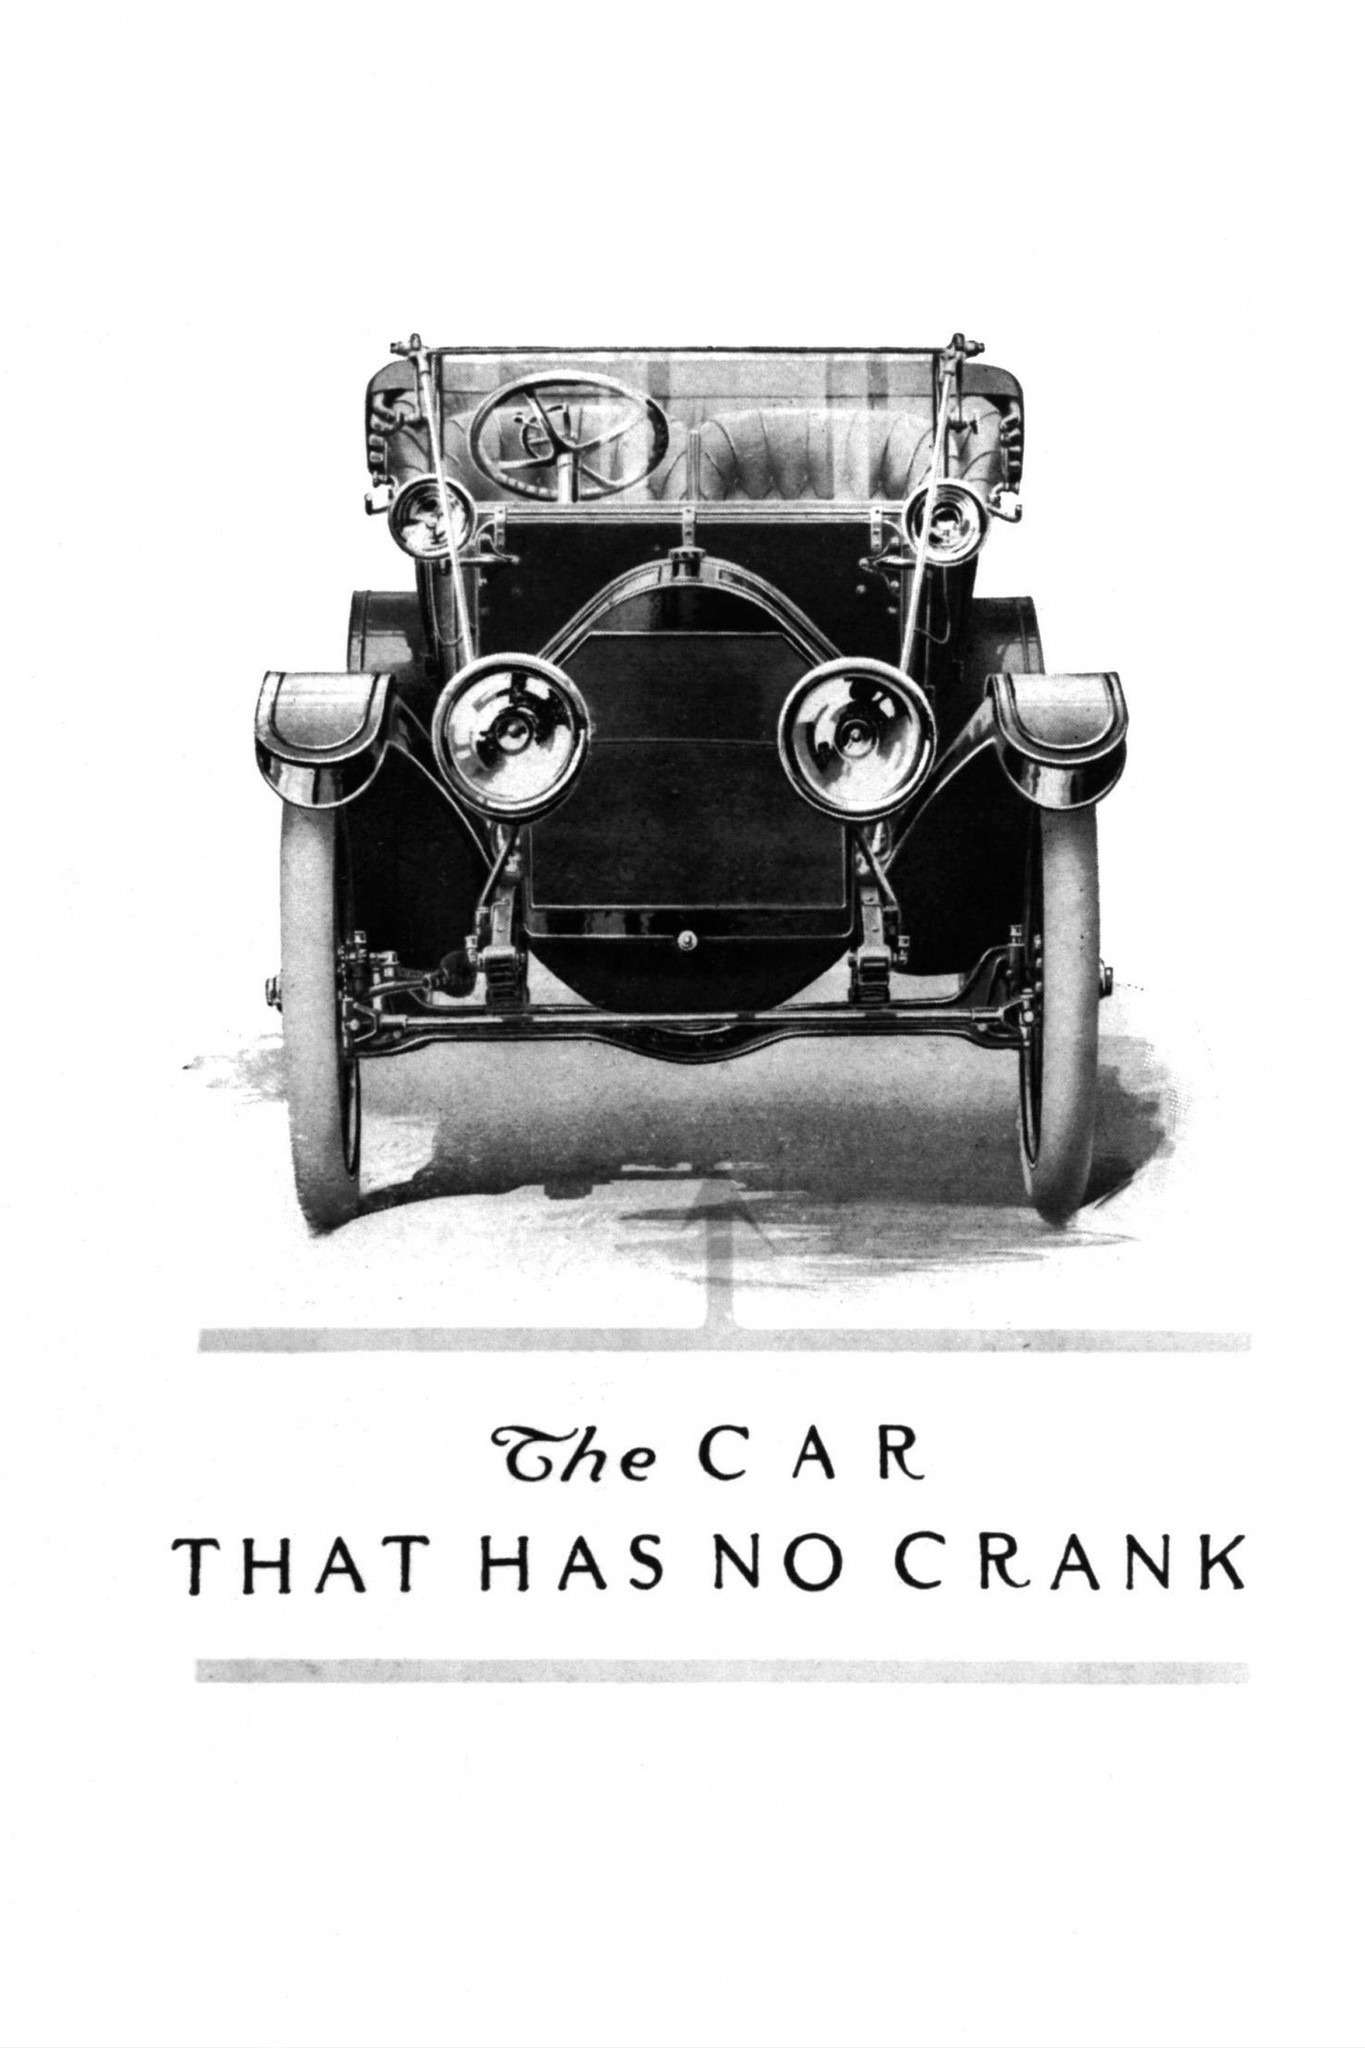 Фирма Cadillac намеренно изображала на рекламе свои машины в фас, чтобы все видели, что у них отсутствует заводная рукоятка. Храповый механизм переселился с носка коленчатого вала в корпус стартера.